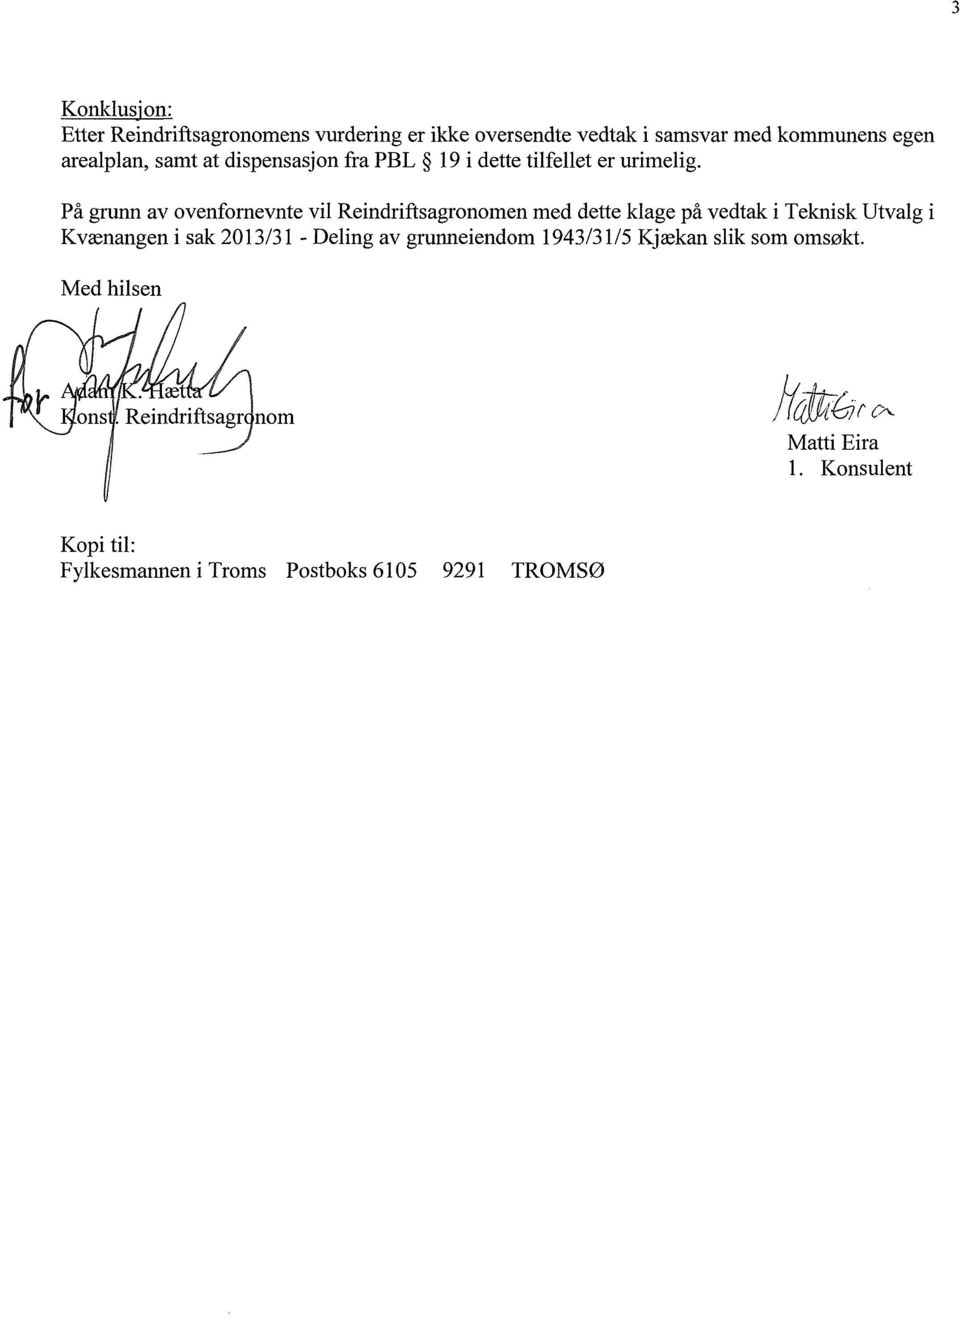 På grunn av ovenfornevnte vil Reindriftsagronomen med dette klage på vedtak i Teknisk Utvalg i Kvænangen i sak 2013/31